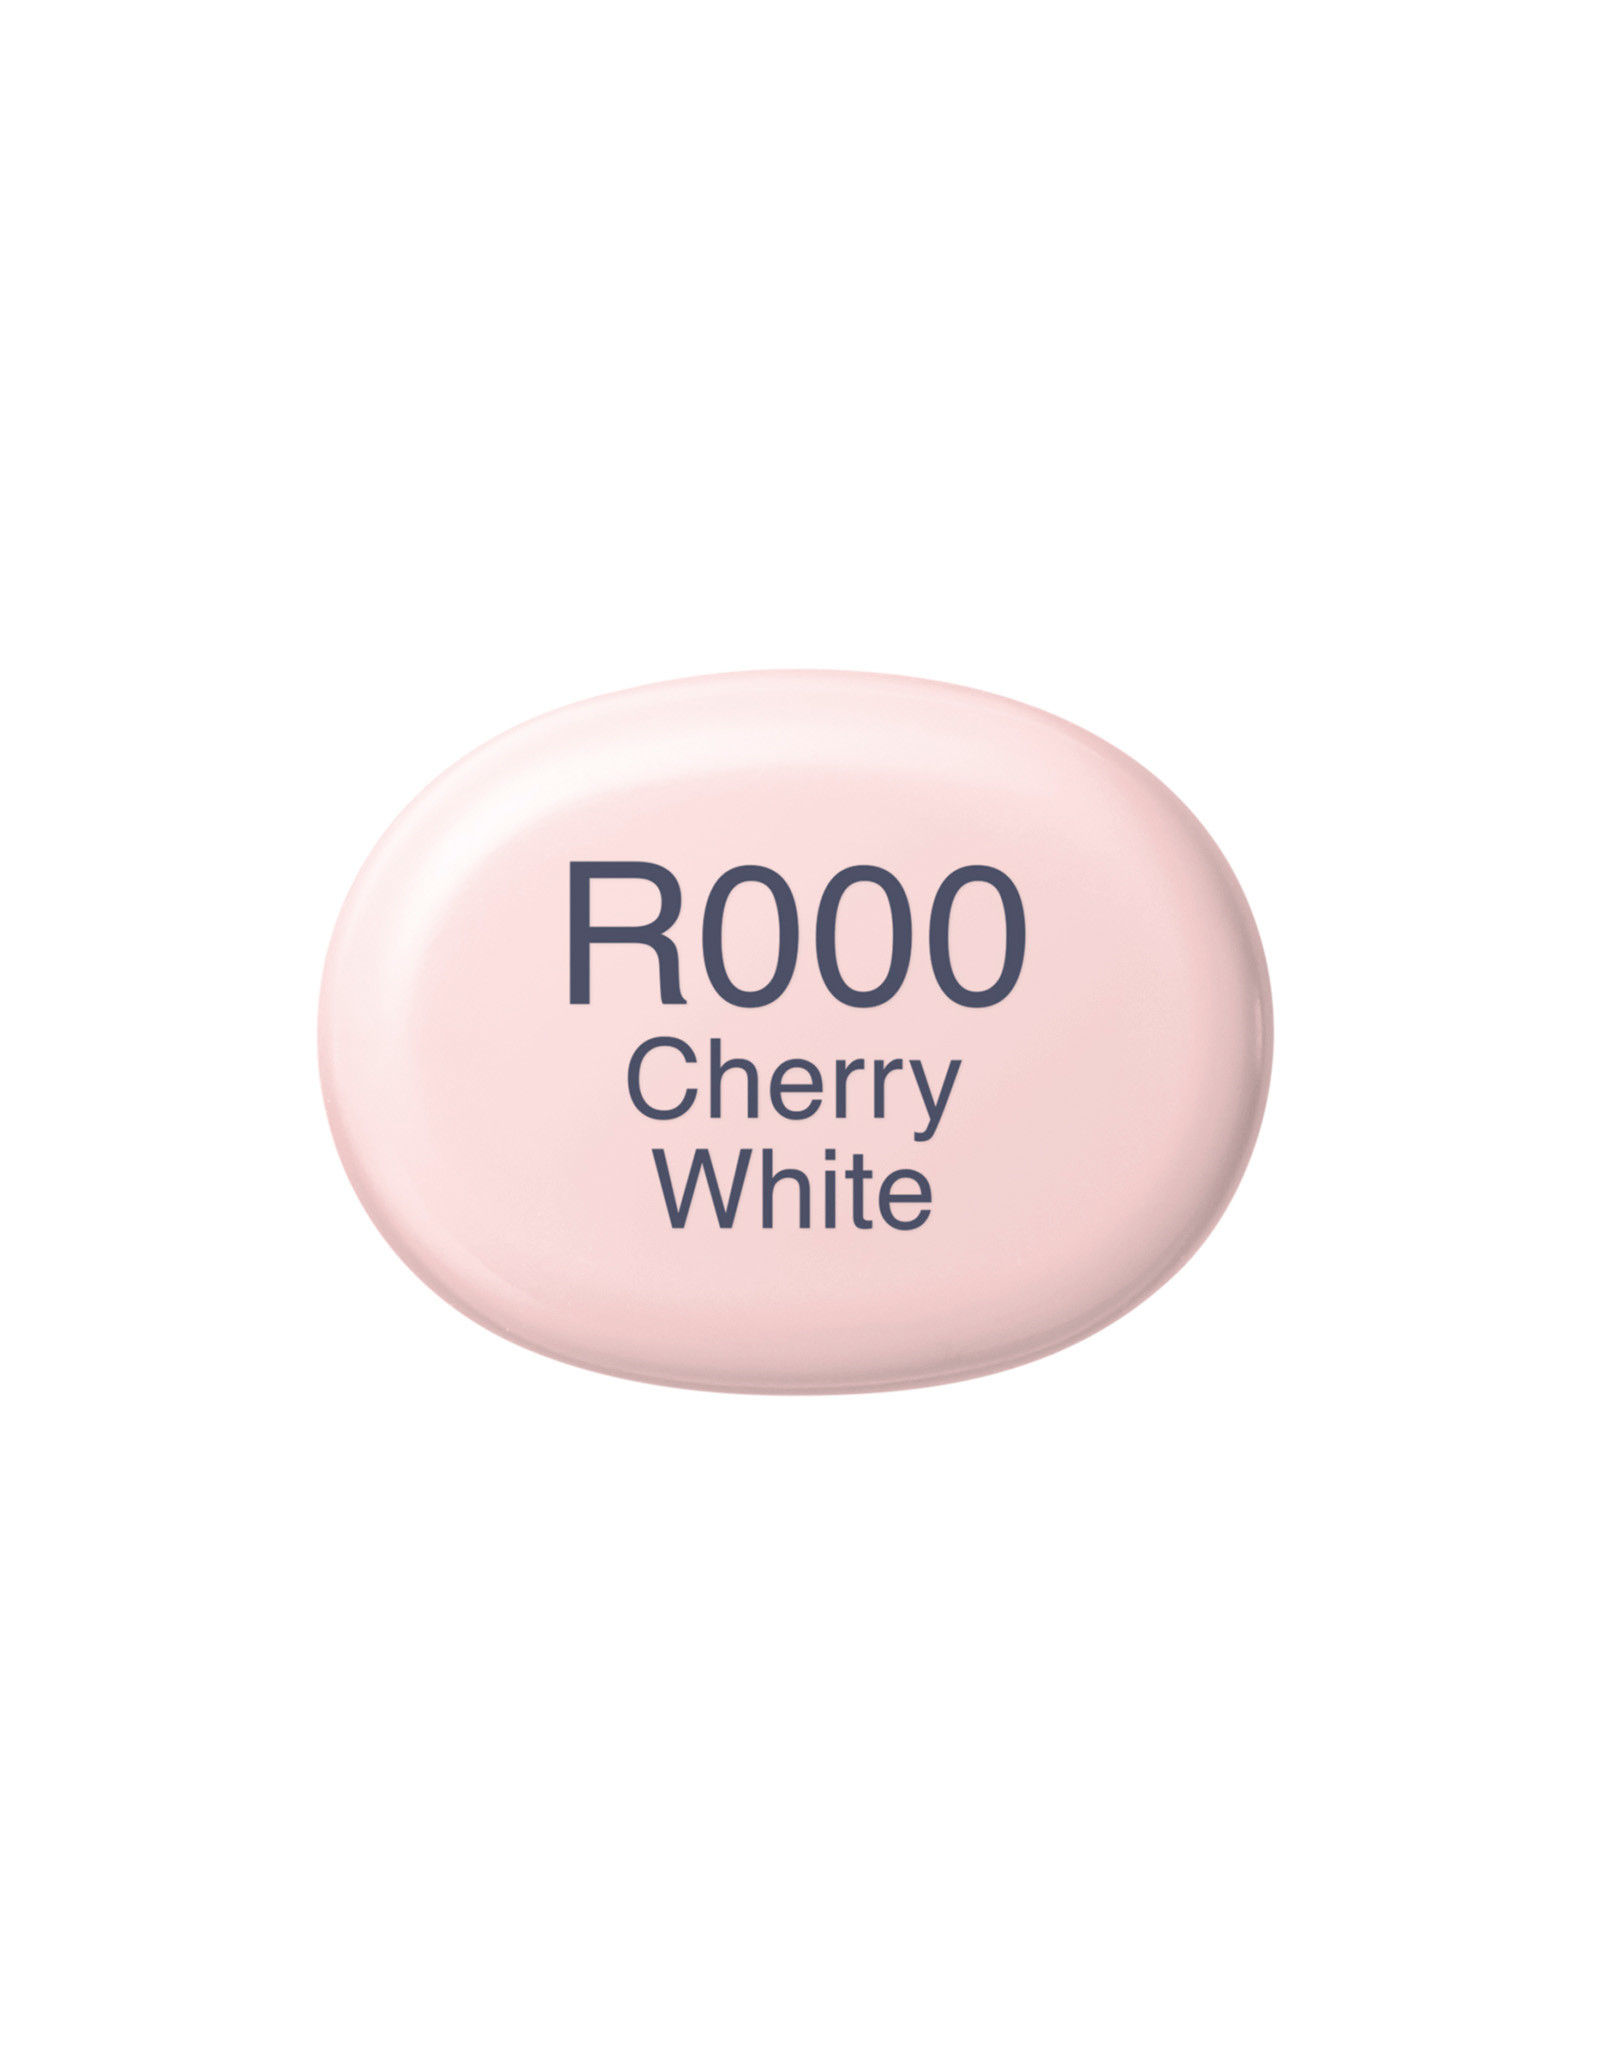 COPIC COPIC Sketch Marker R000 Cherry White